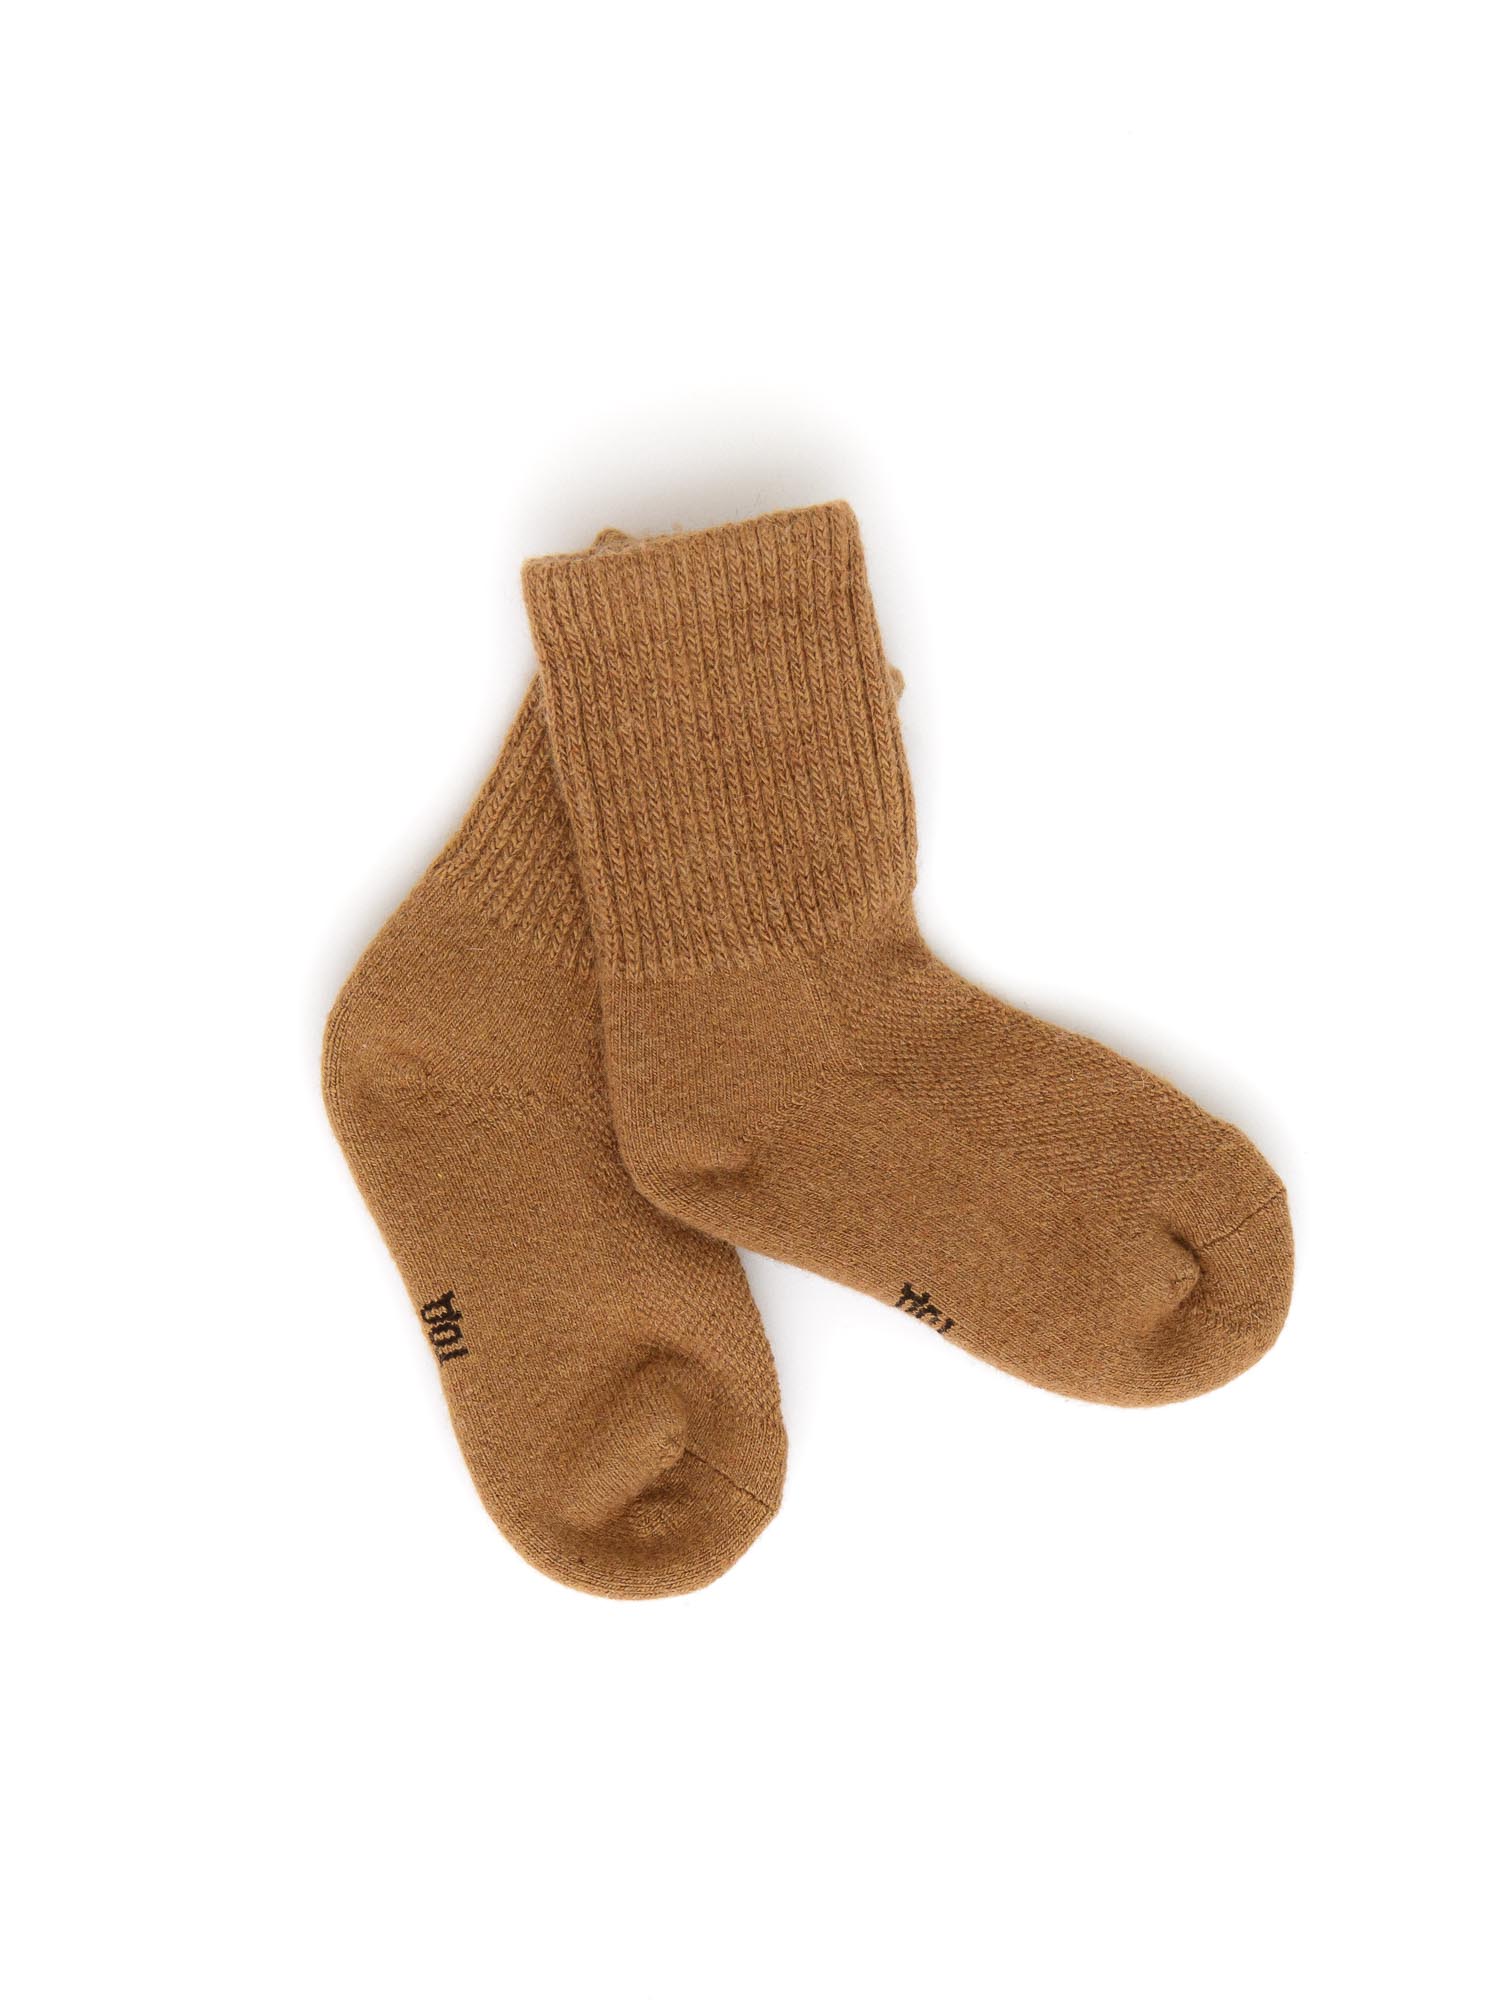 Детские носки из монгольской шерсти 5Р ТОД ОЙМС ХХК, цвет рыжий, размер 5 (18-20 см)